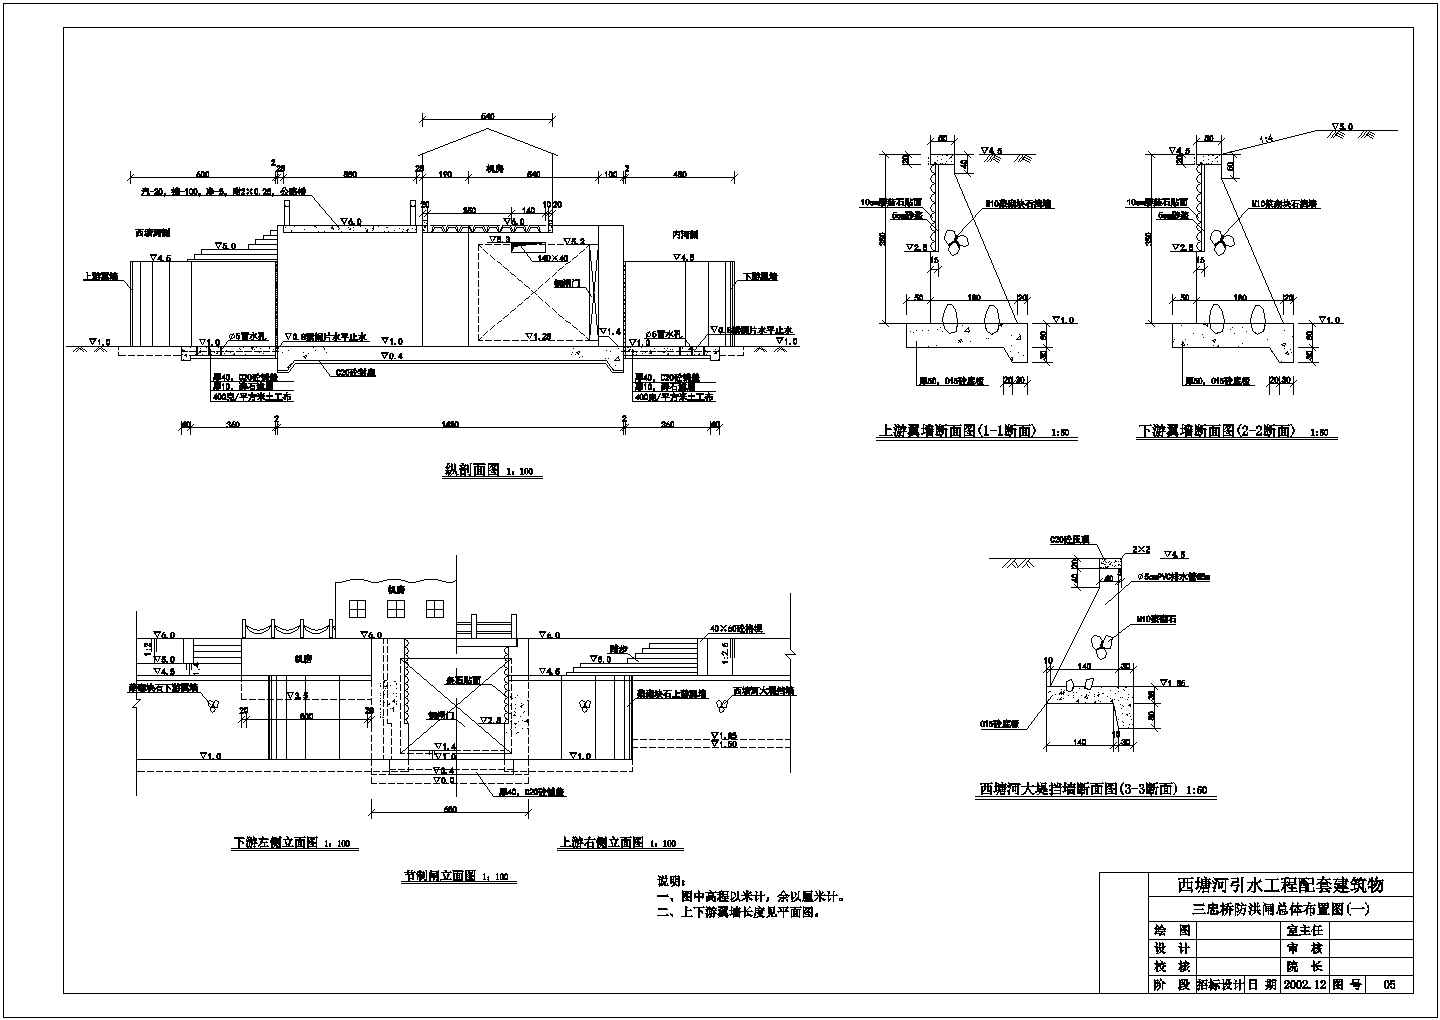 西塘河三忠桥防洪闸技施阶段结构钢筋设计图纸